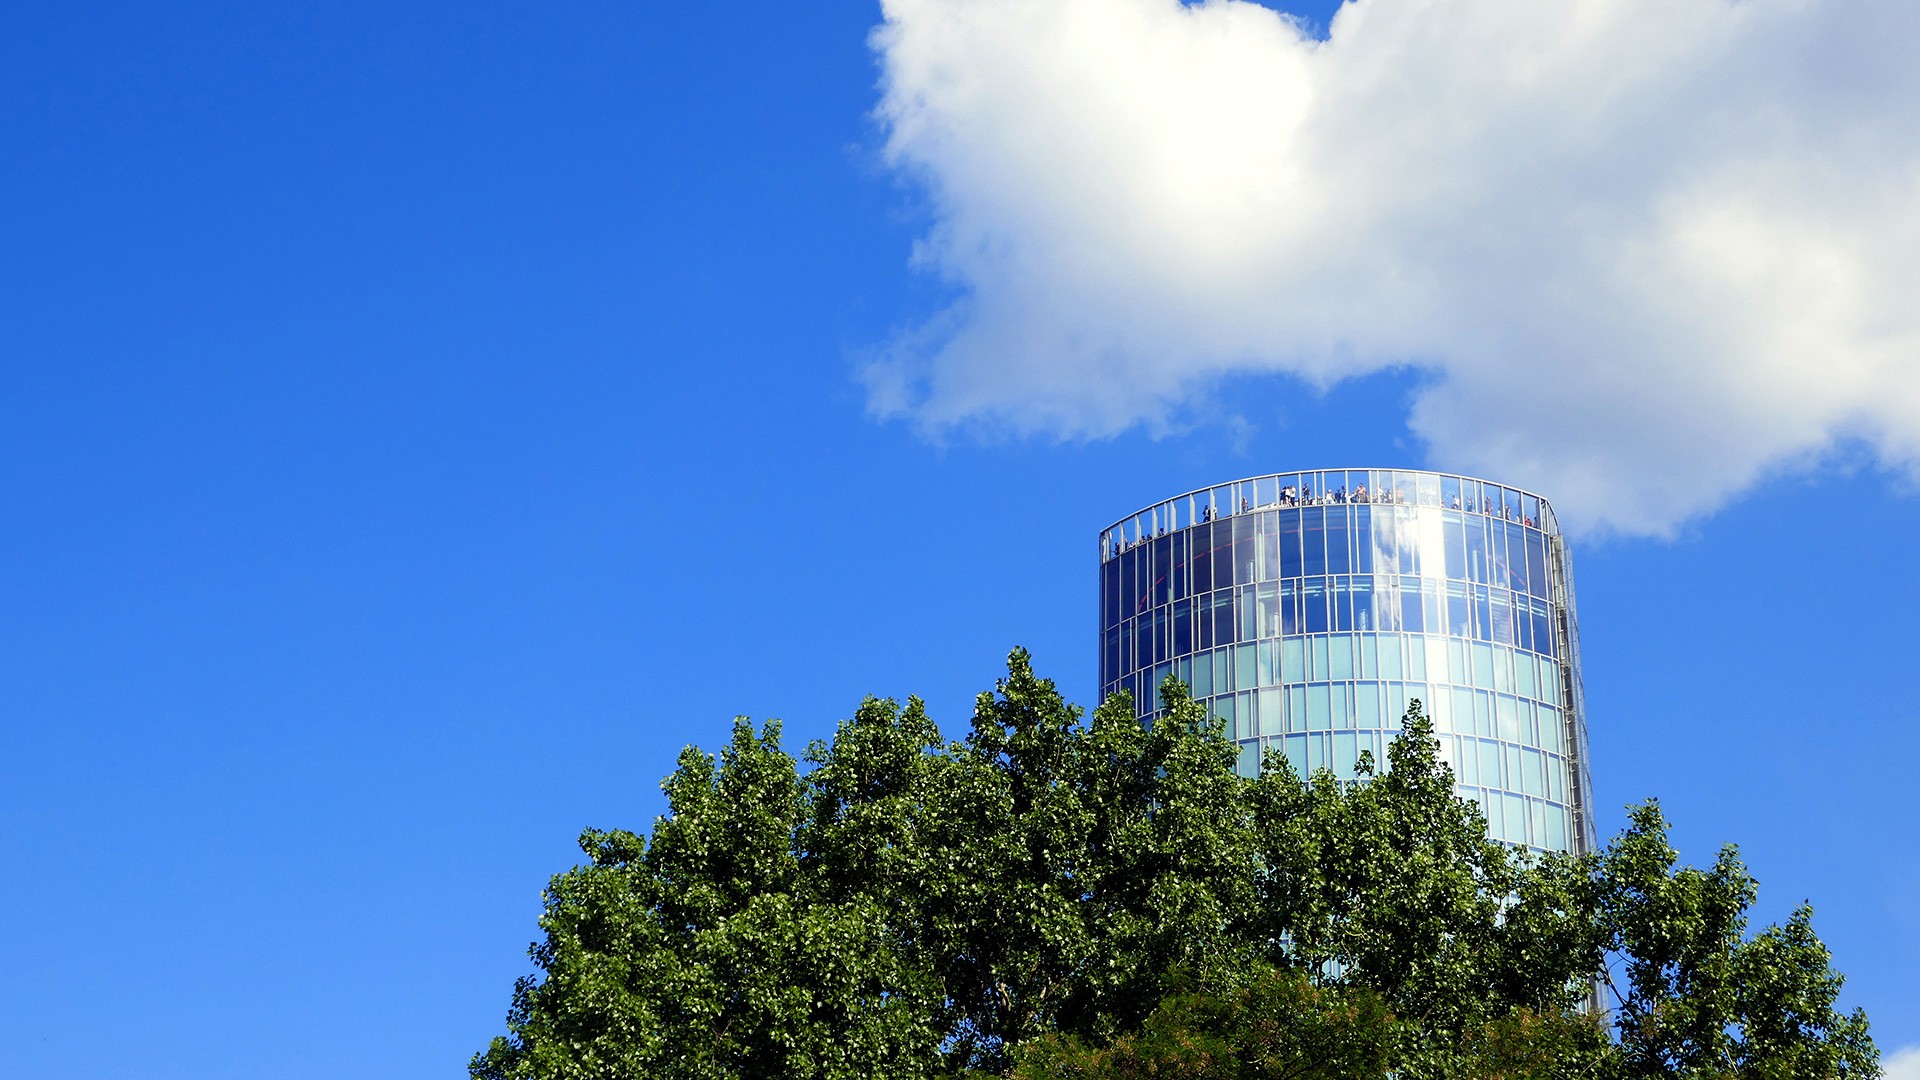 Der KölnTriangle ragt über die Bäume in den blauen Himmel mit weißen Wolken.